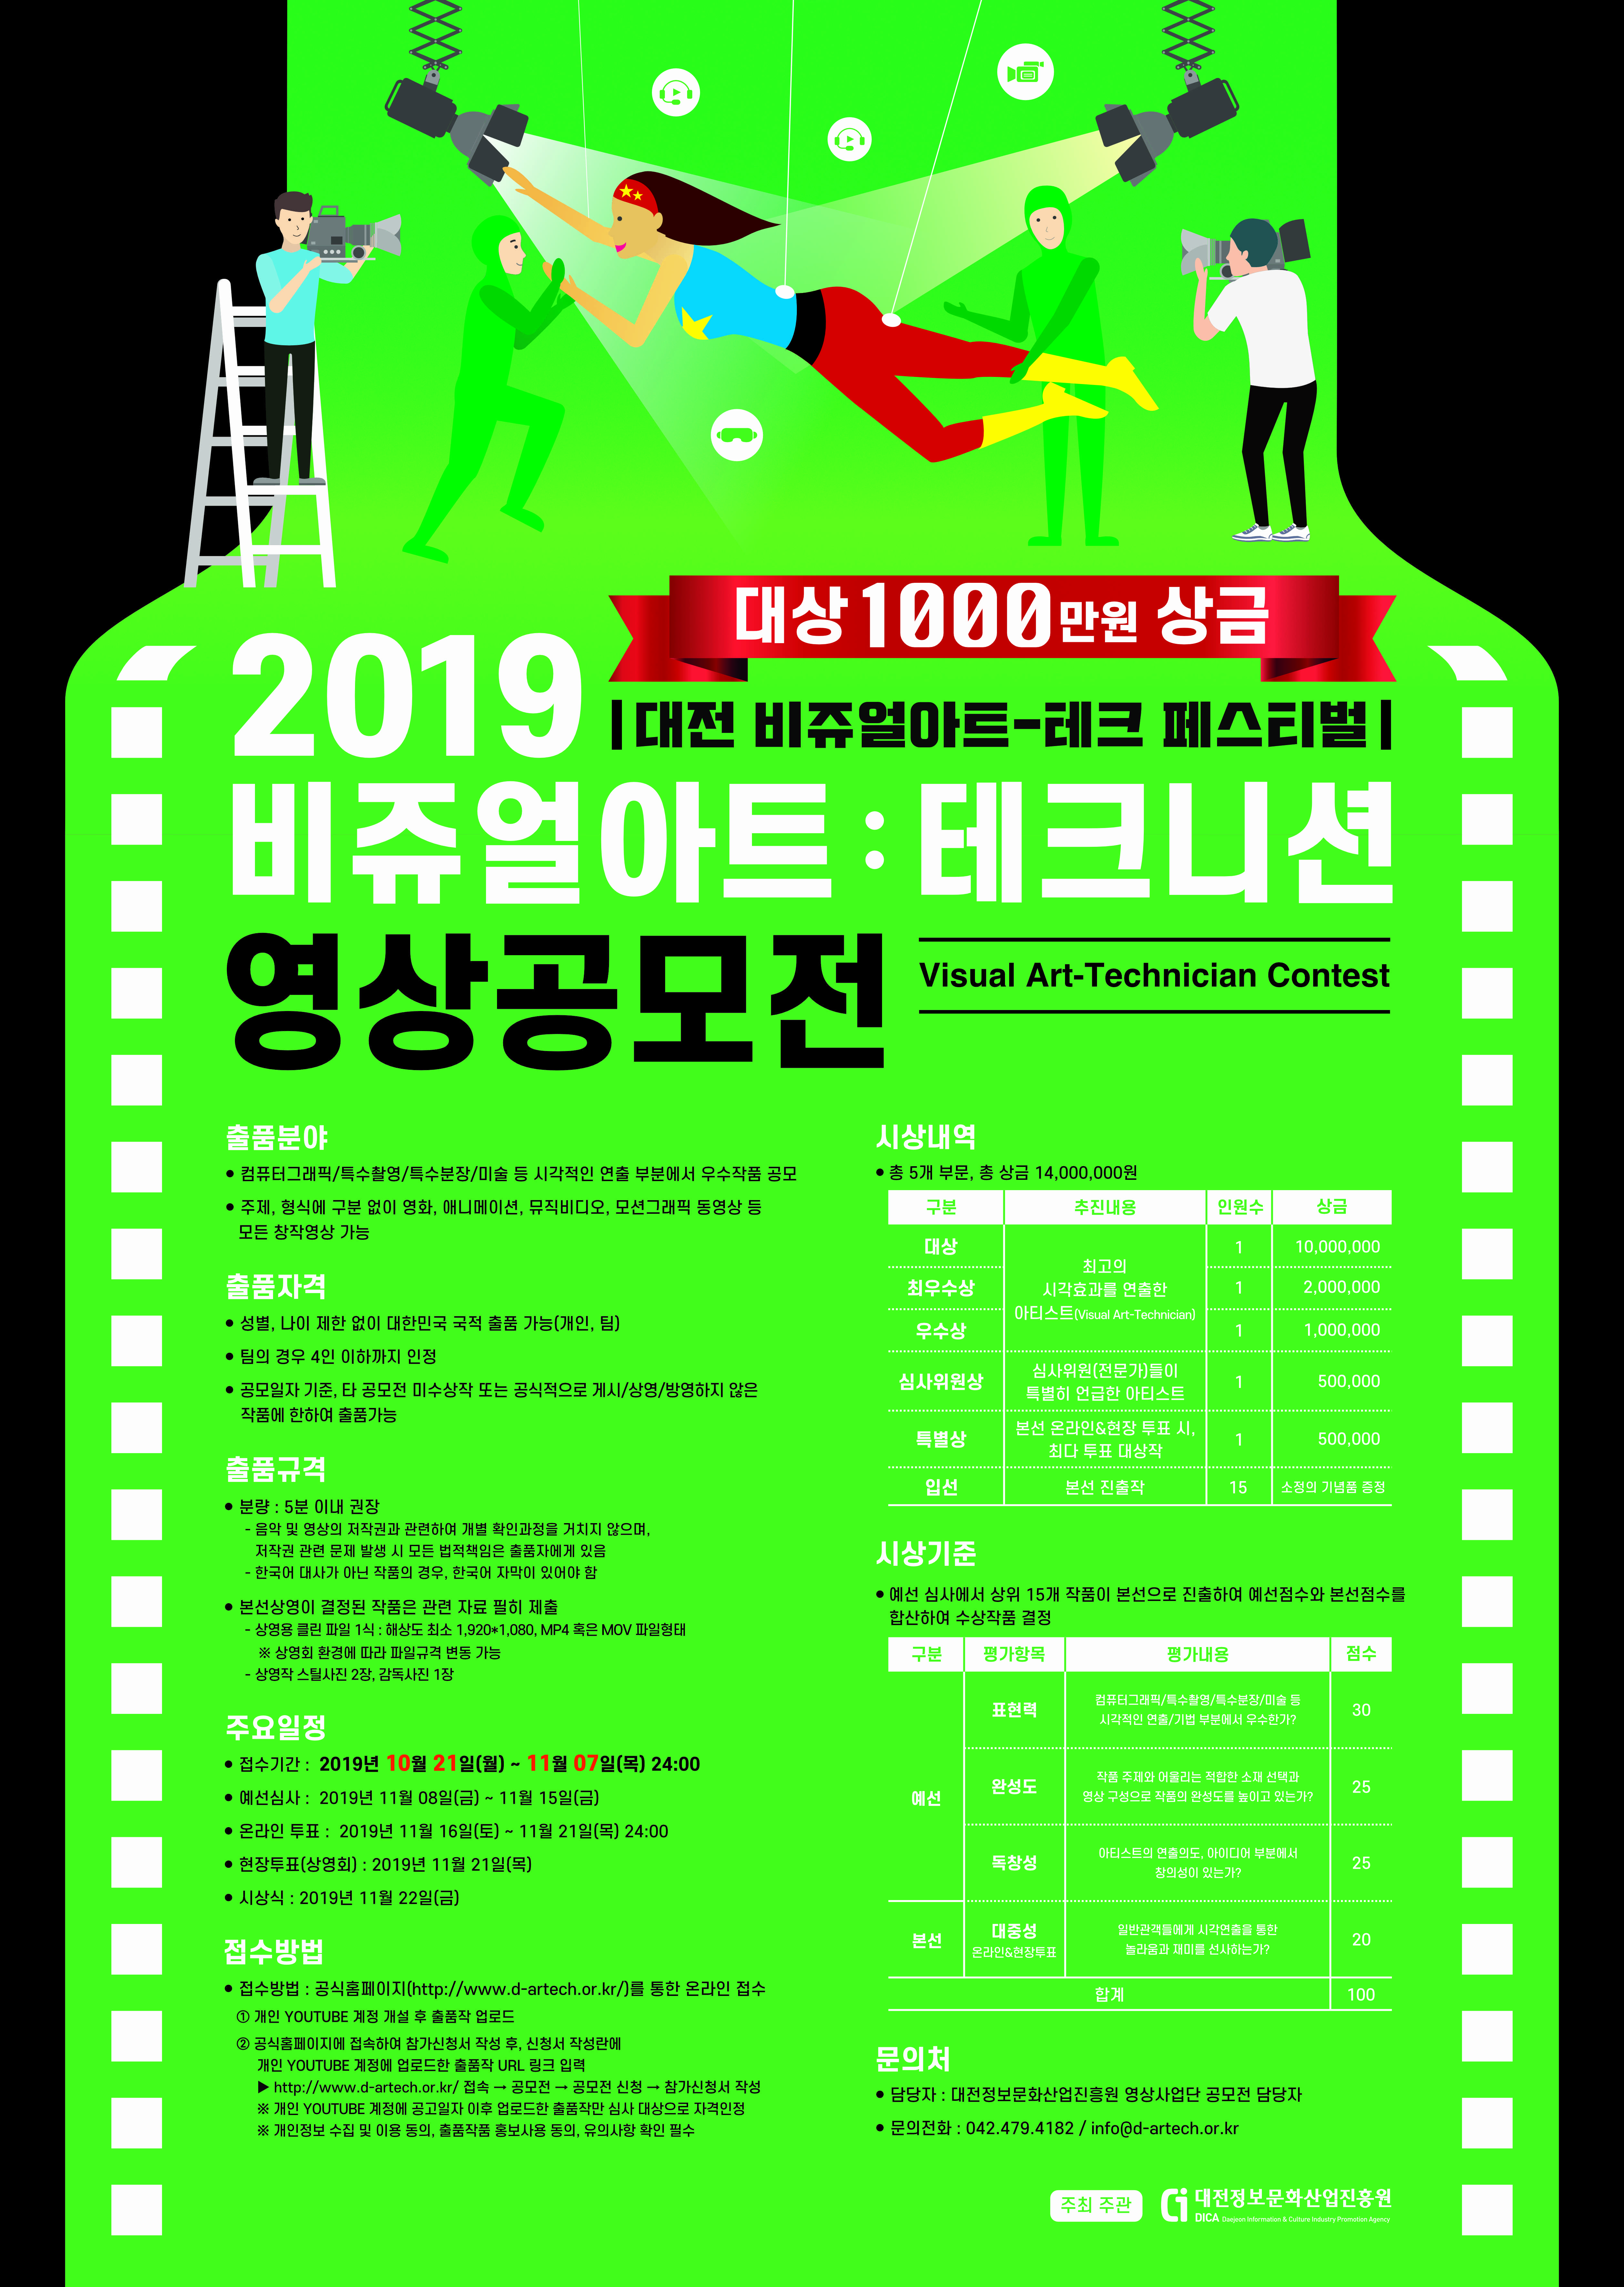 20190919_대전비쥬얼아트테크니션 공모전 포스터 확정 426x600.jpg